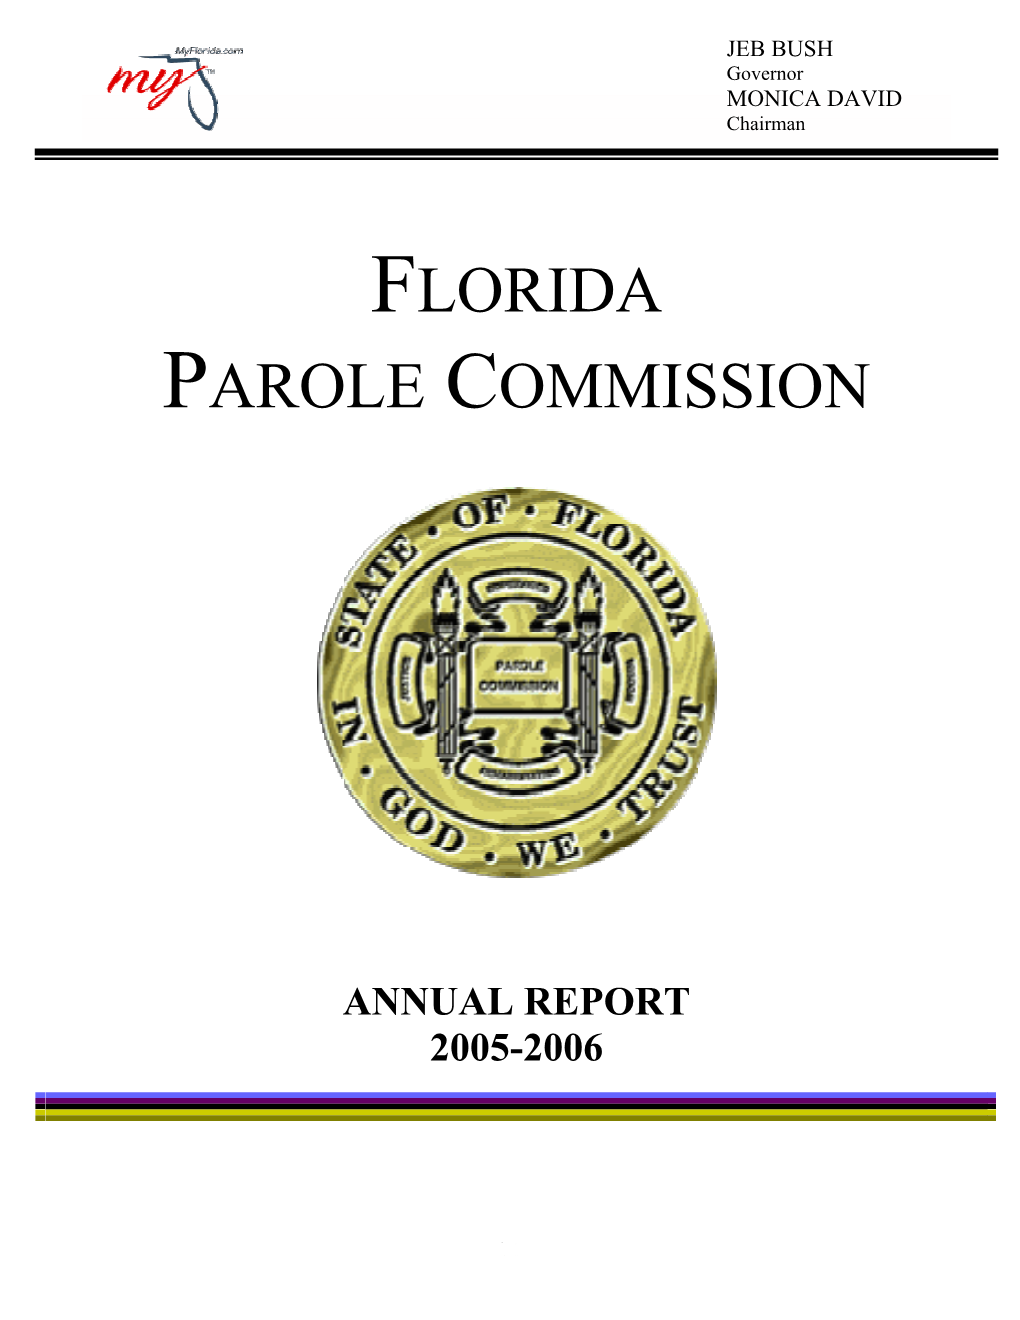 Florida Parole Commission